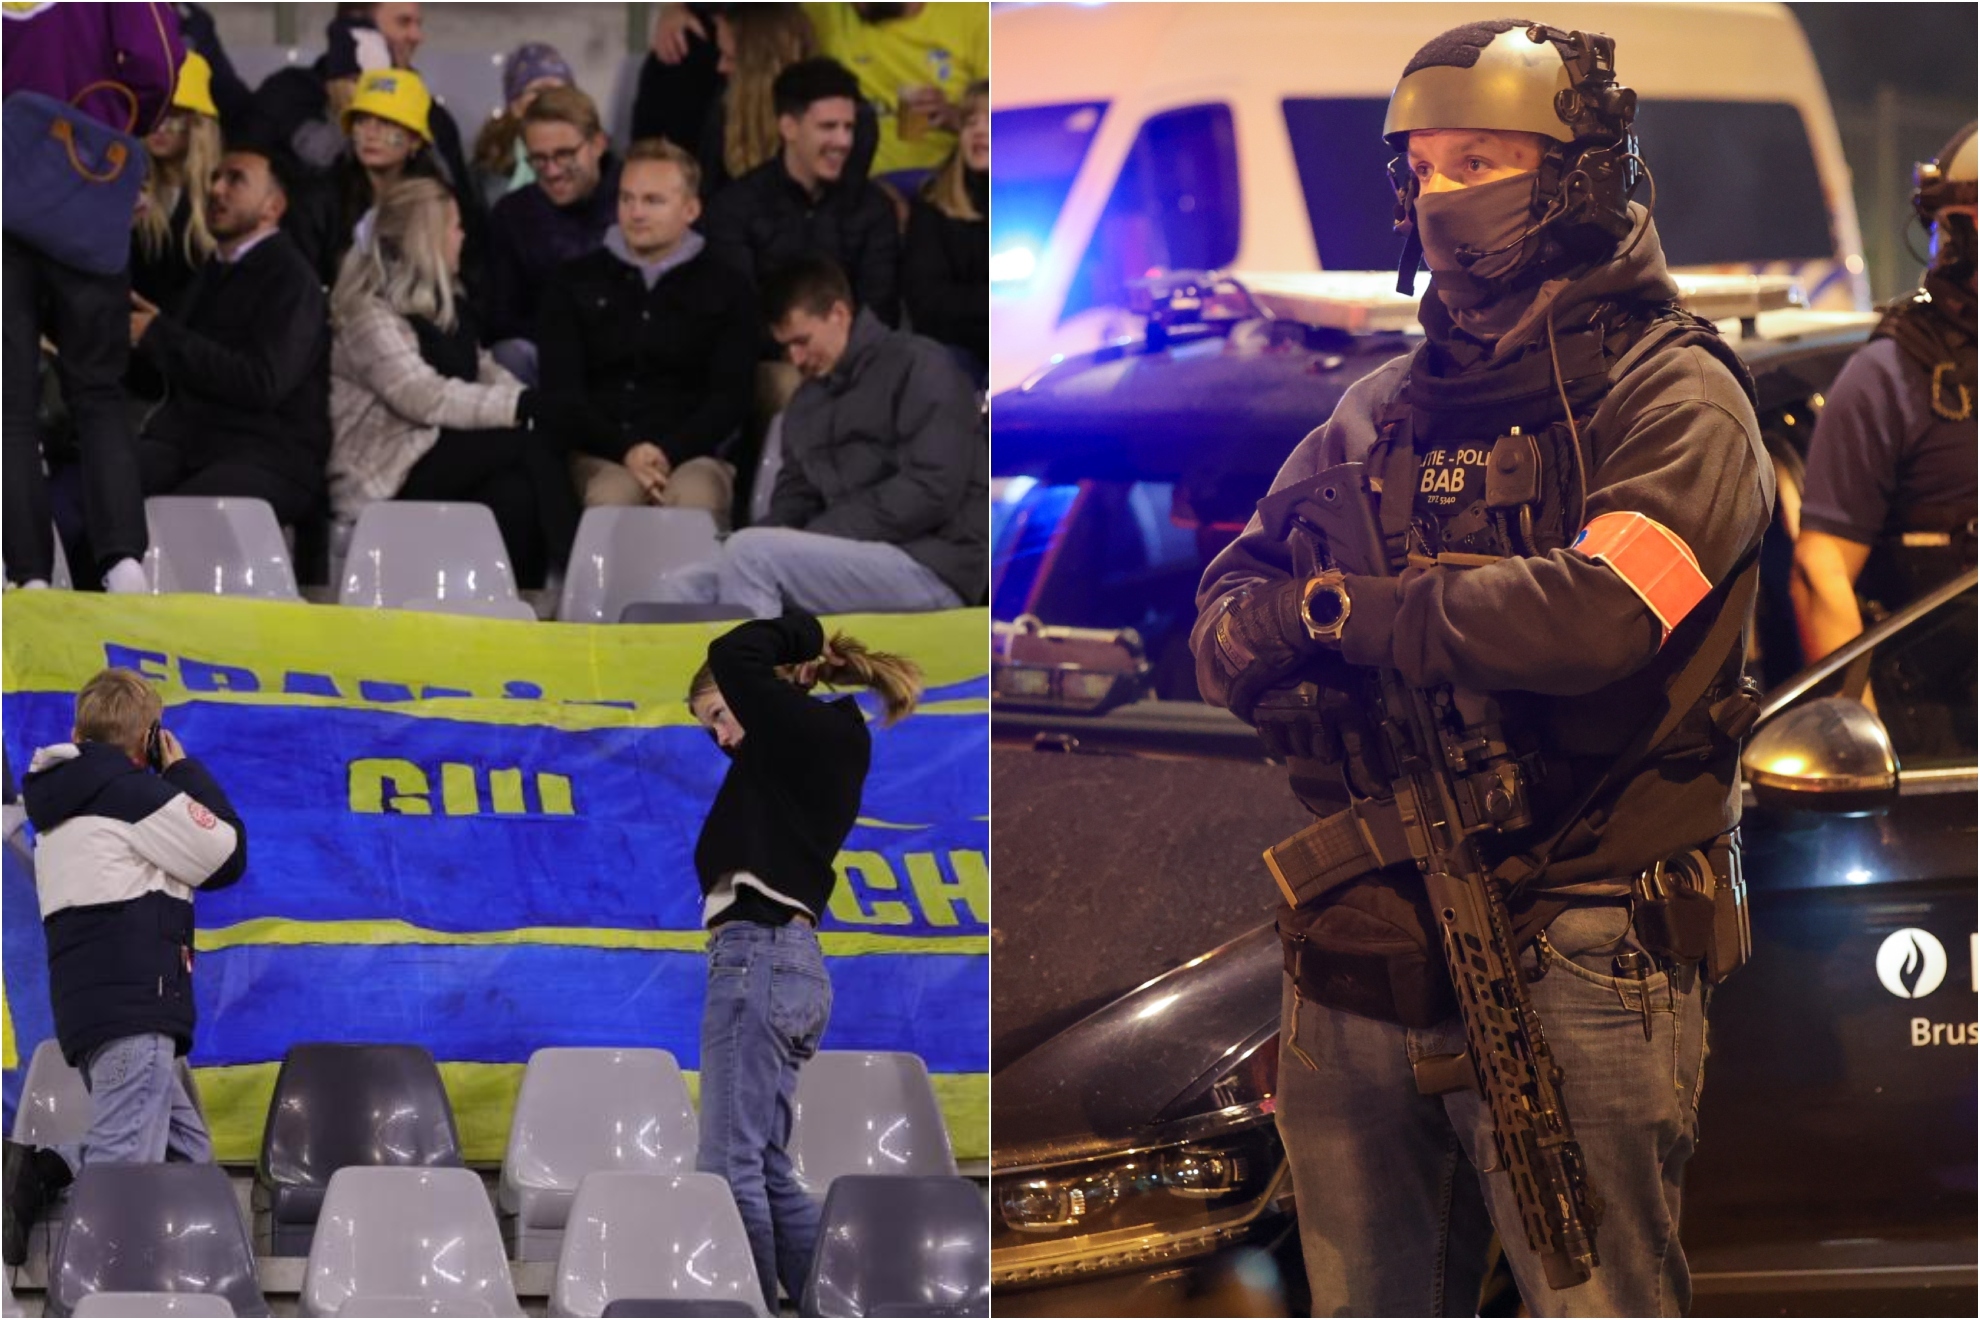 Los aficionados suecos en Bruselas y un policia belga en la escena.